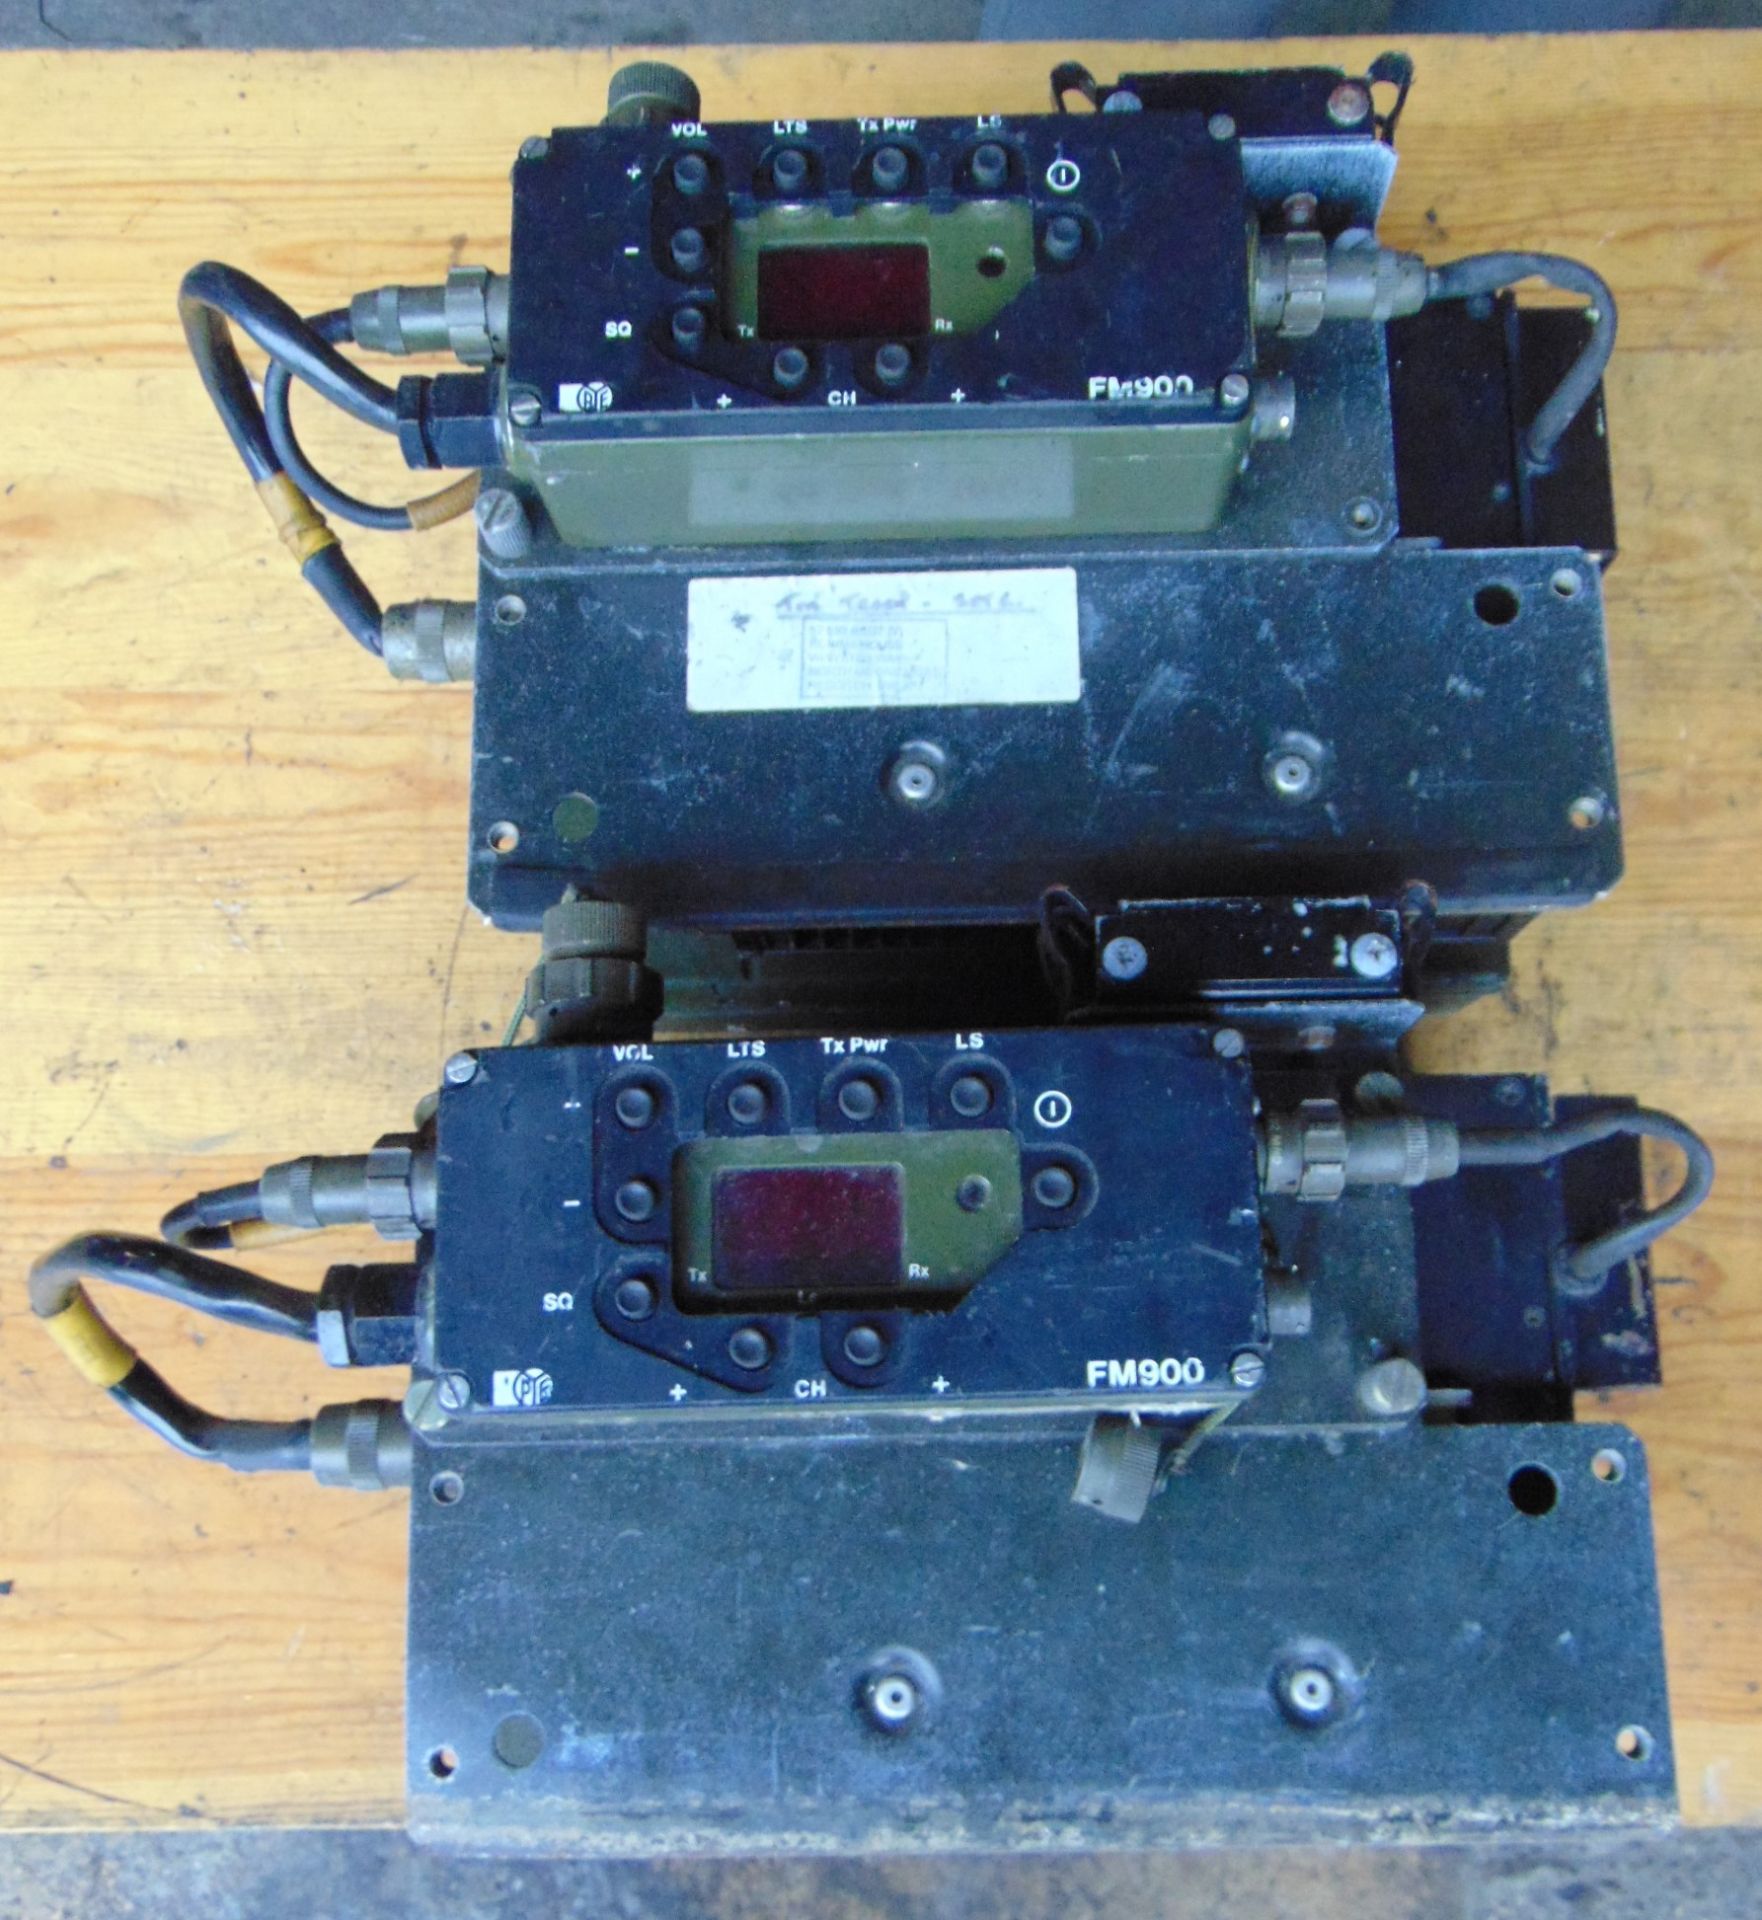 2 x PYE FM 900 Transmitter Receiver - Image 2 of 6